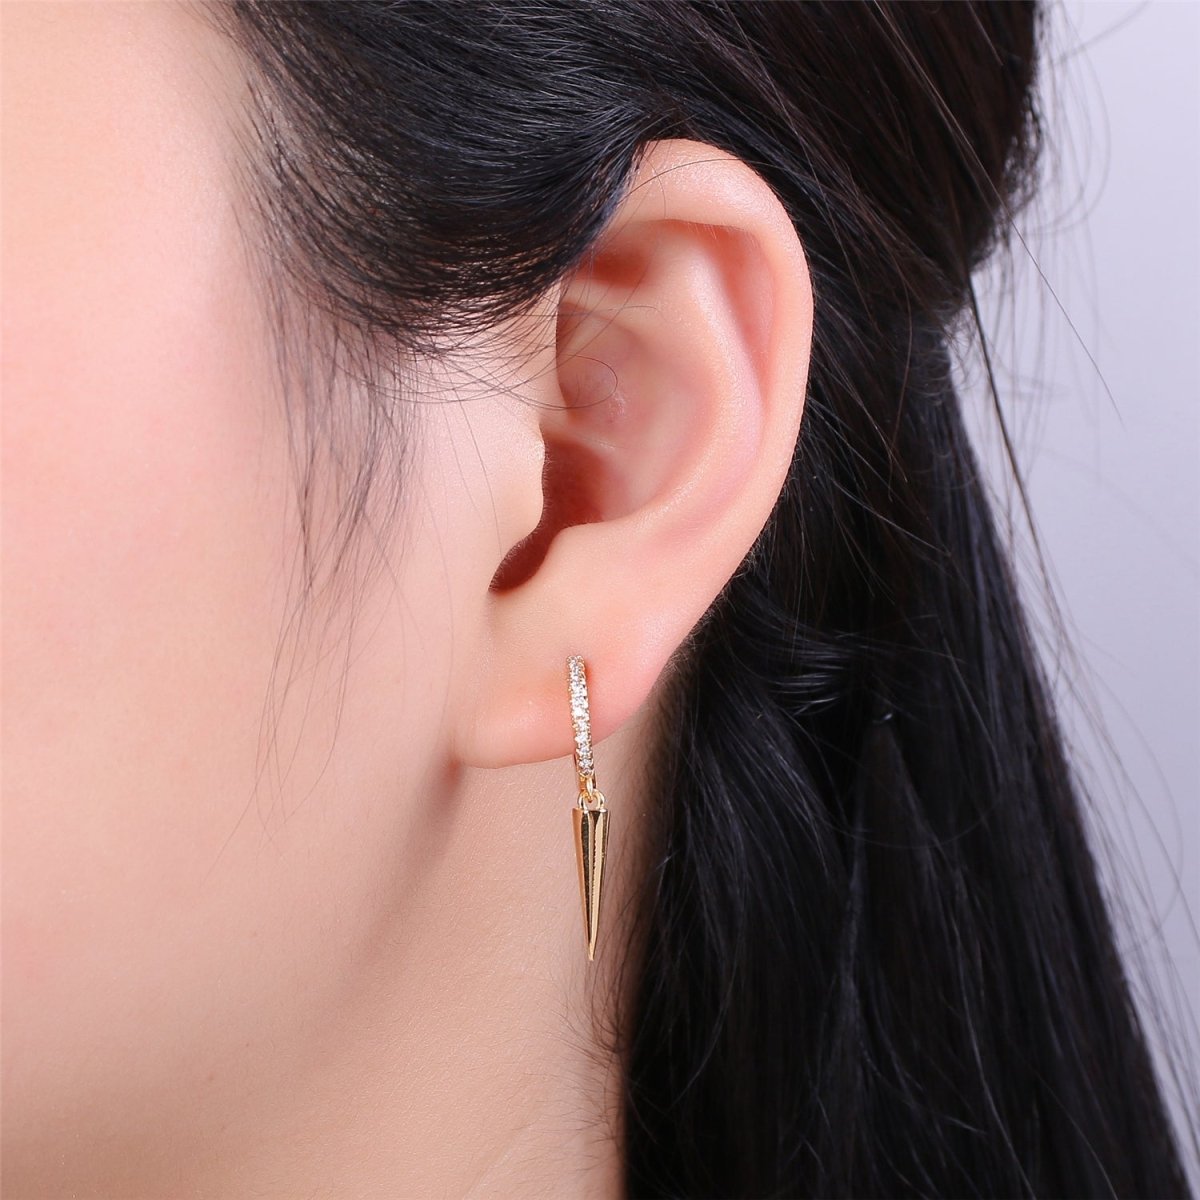 Gold Filled Spike Earrings, Single Spike Hoop Earrings K-354 - DLUXCA